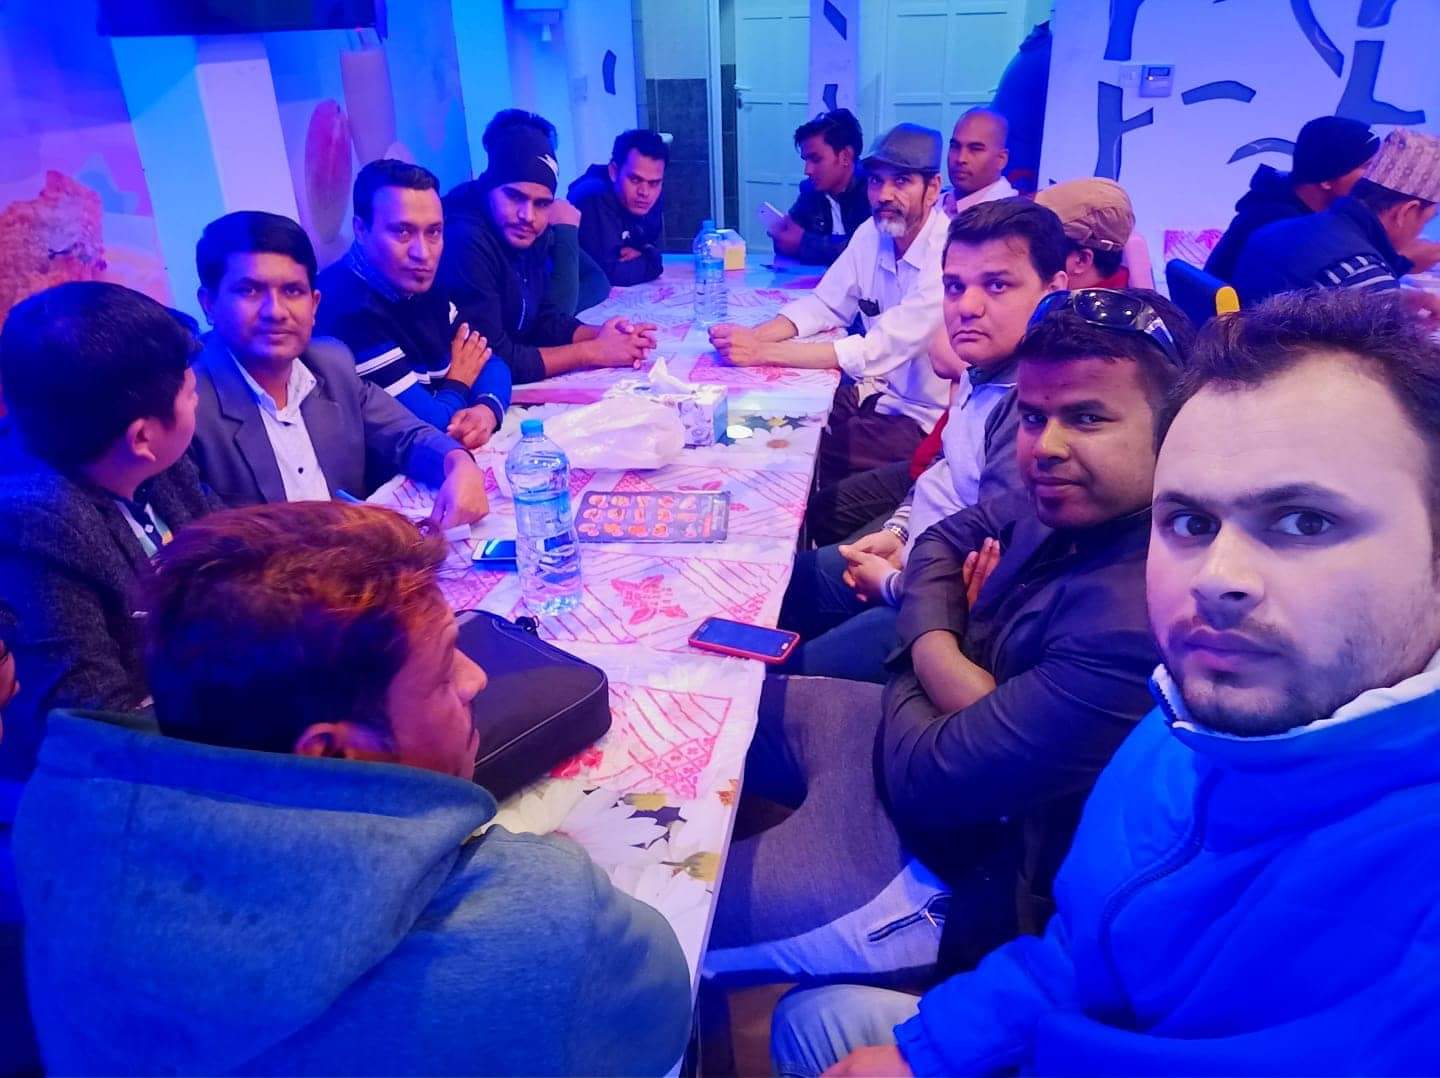 अन्तरास्ट्रिय नेपाली समाज नयाँ शक्ती पार्टी कतारले आफ्नो प्रथम सनैया भेला गर्दै